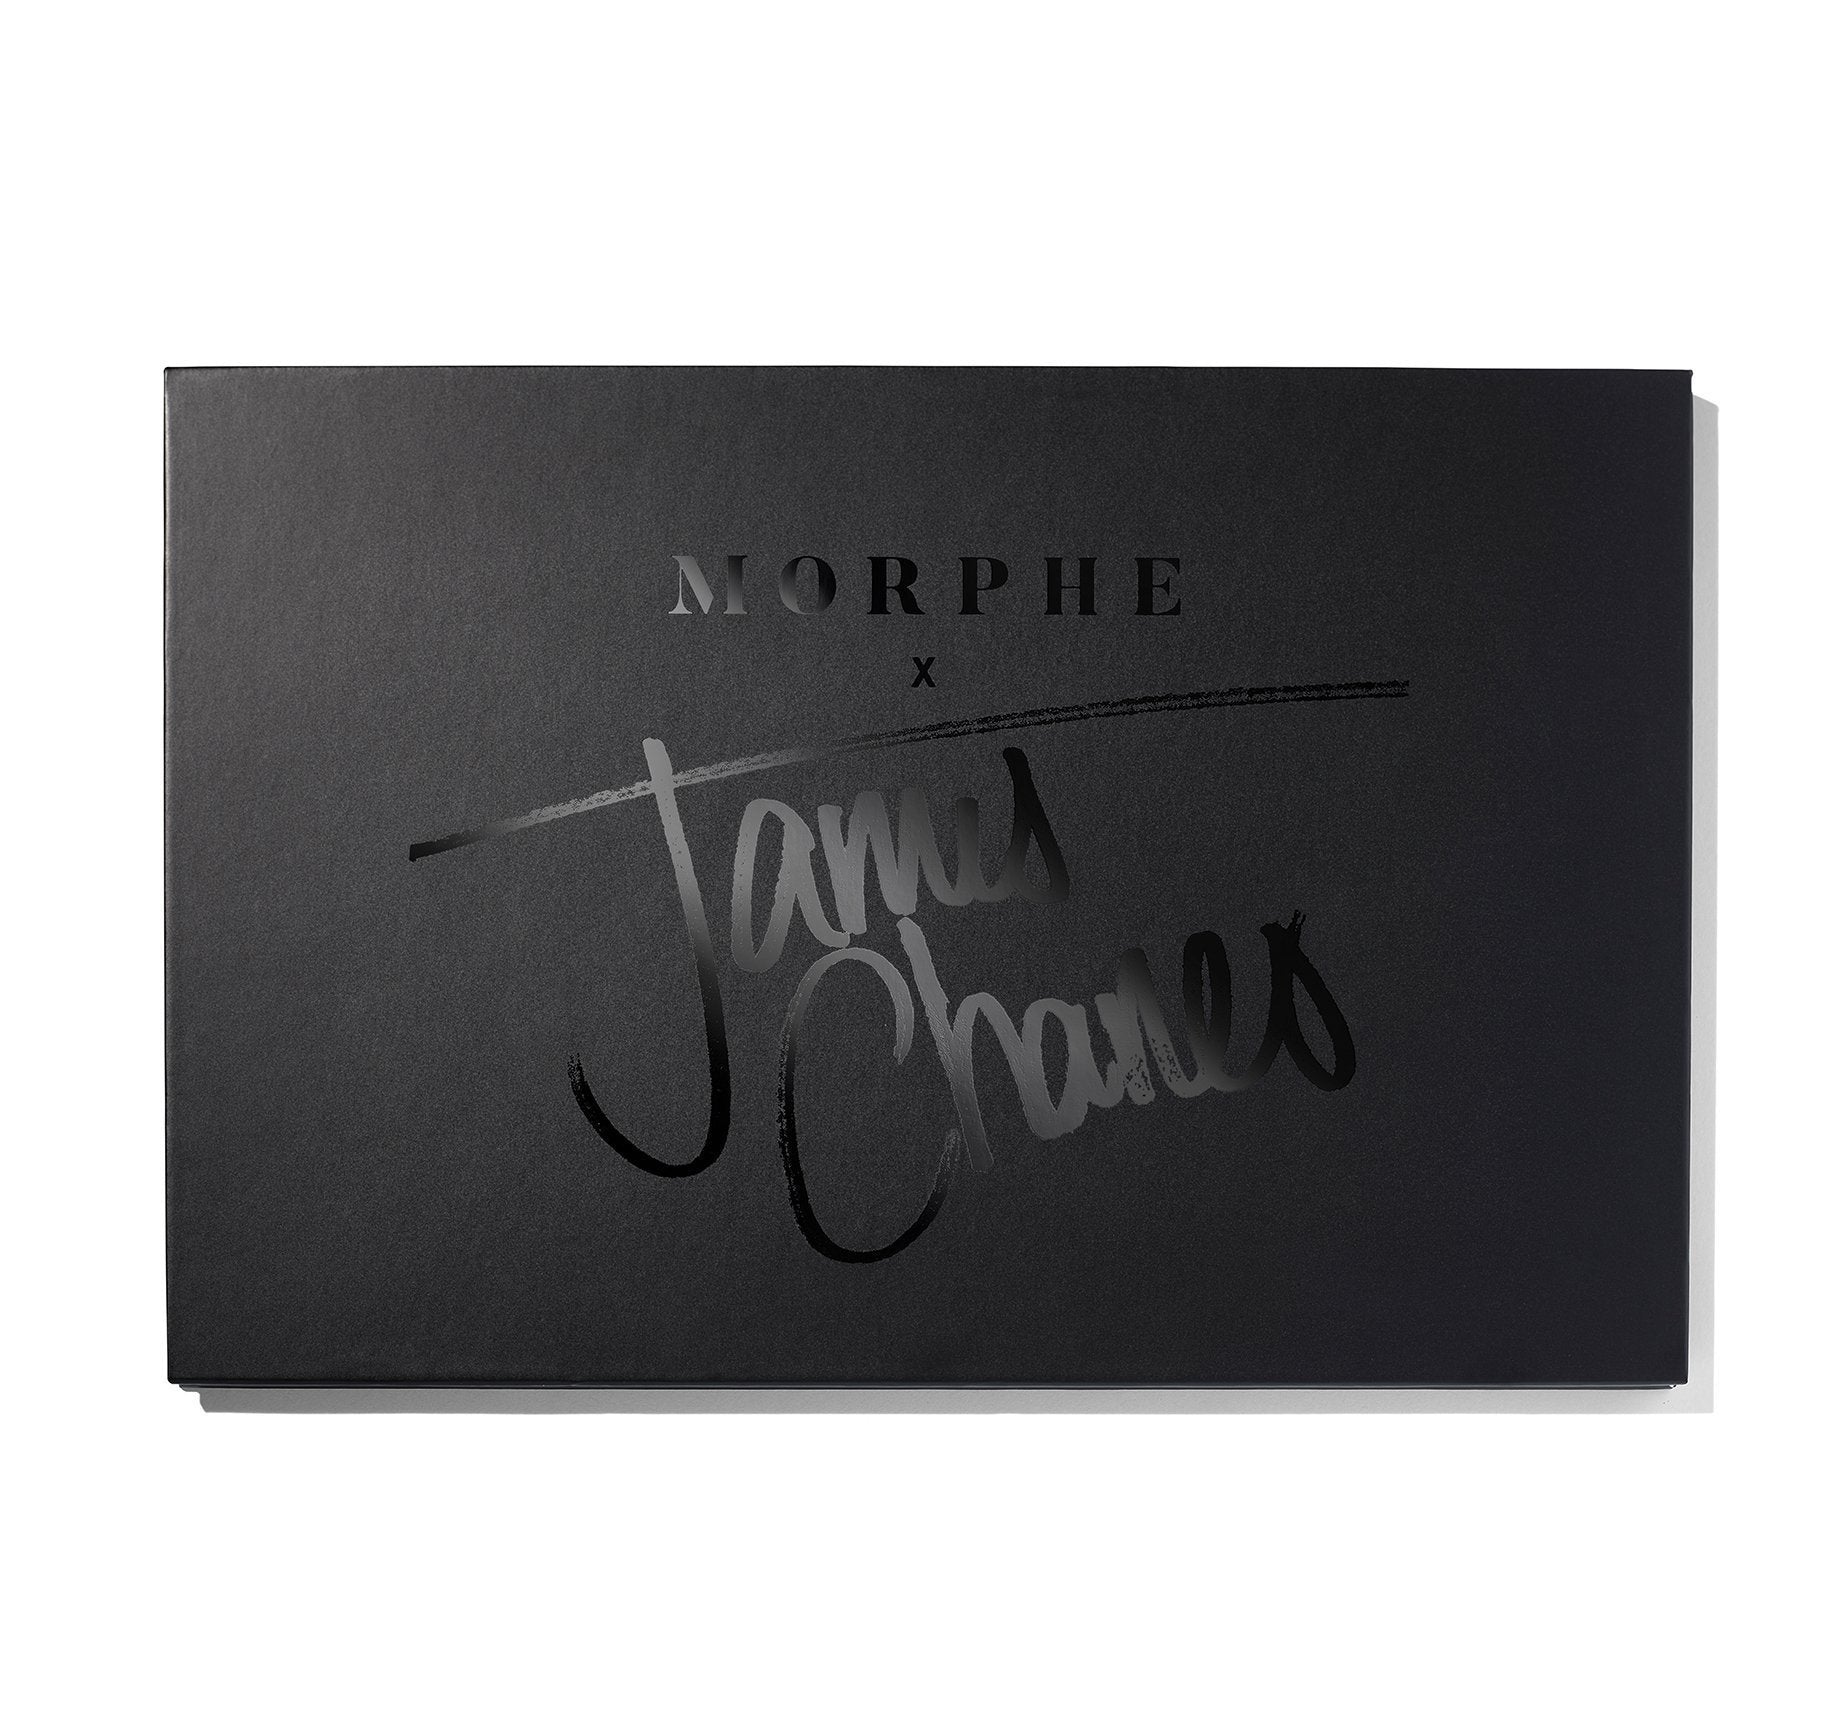 Morphe The James Charles Palette